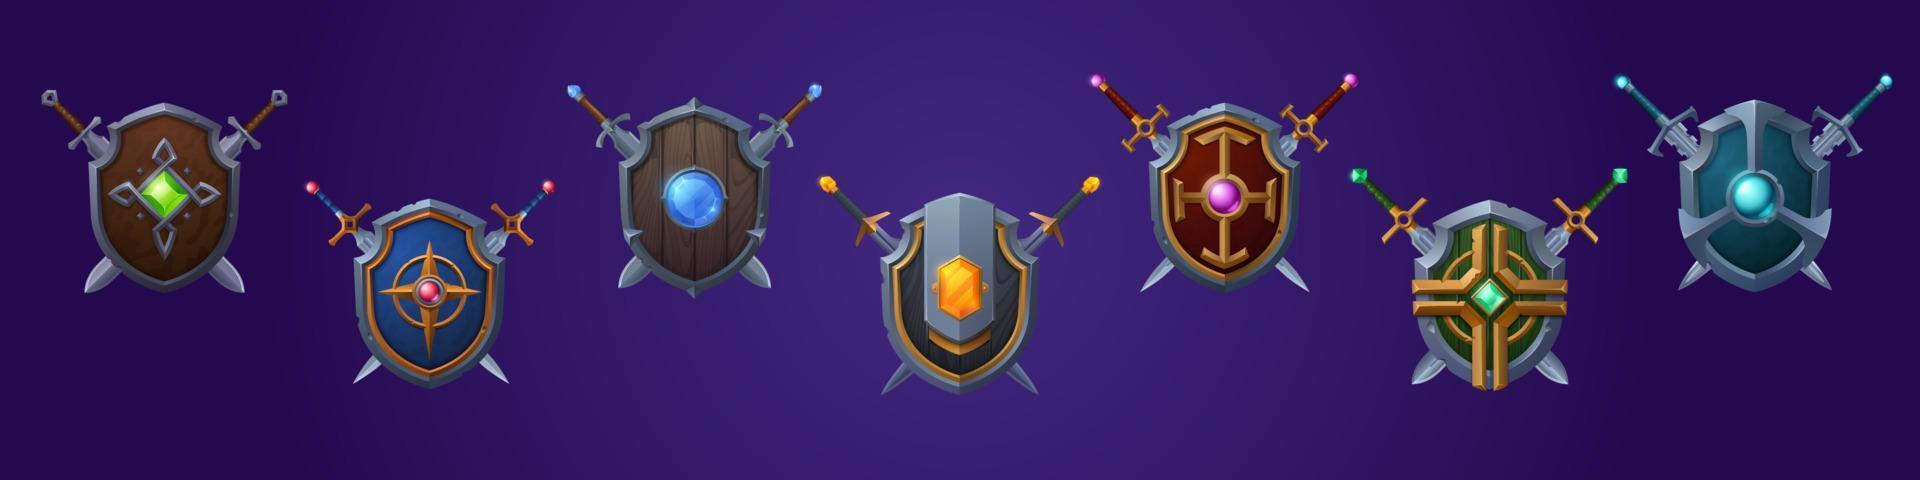 conjunto de escudos de jogo desenhos animados fantasia medieval armadura vetor